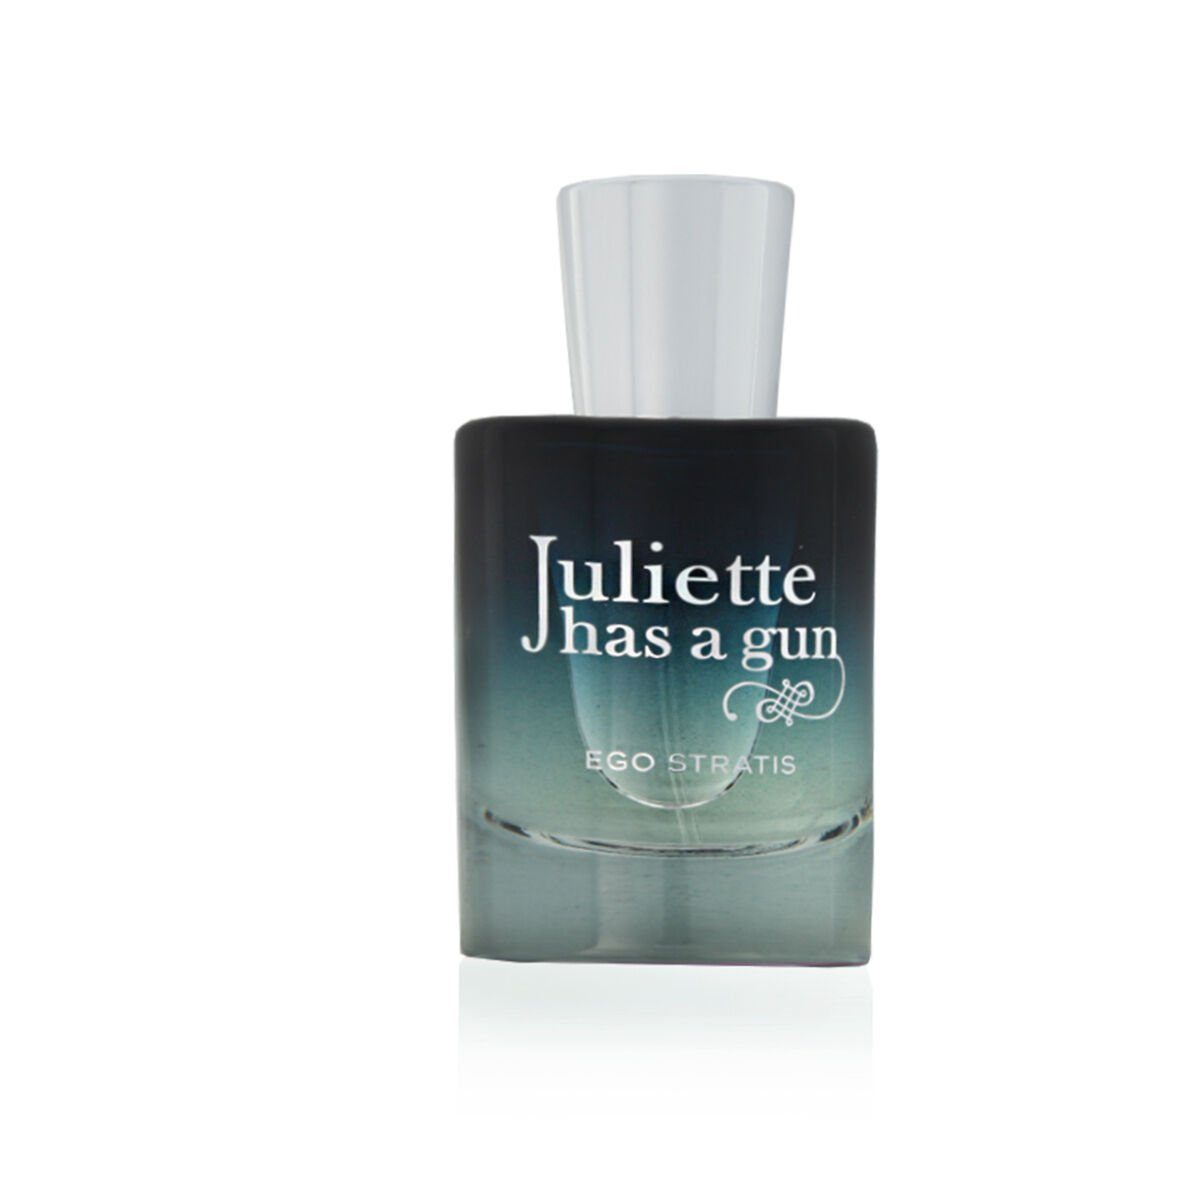 Juliette Eau Has de a Juliette Eau A Stratis de has Ego Unisex-Parfüm ml Parfum Gun Gun 50 Toilette